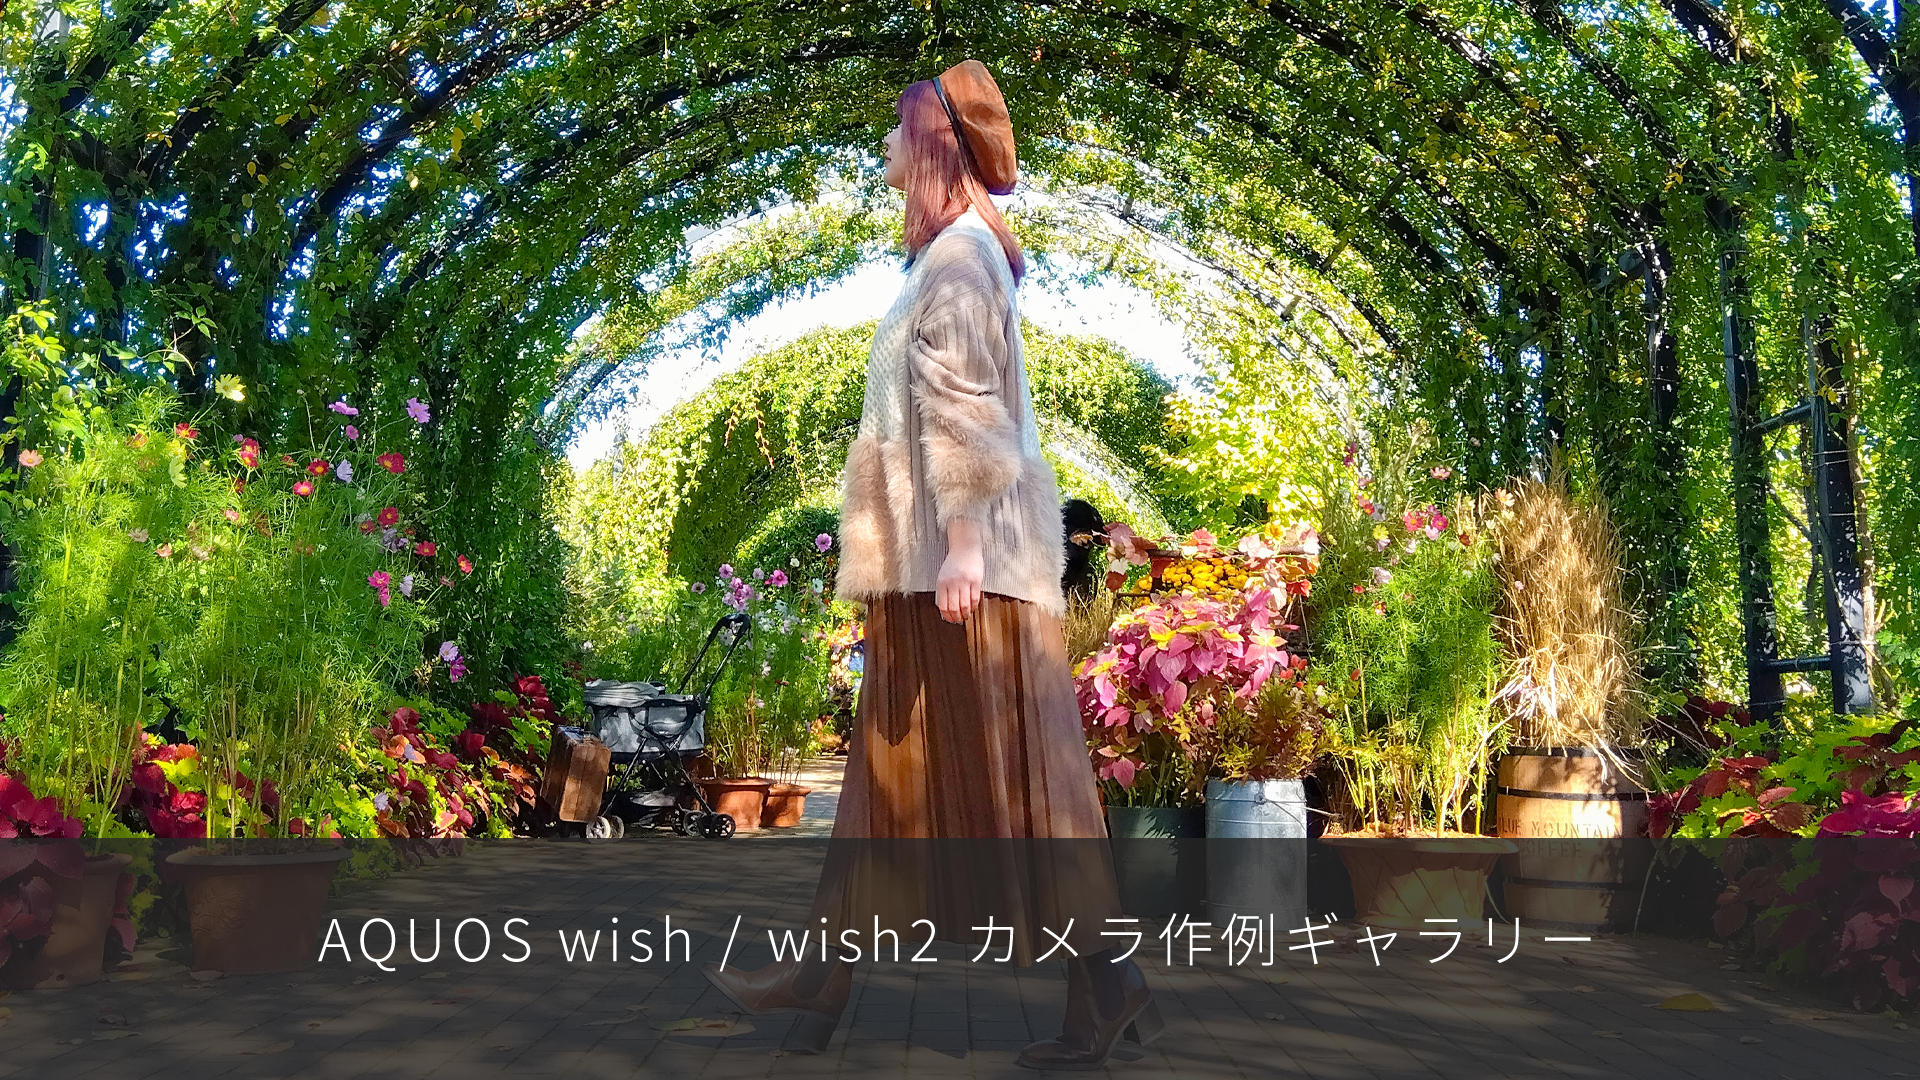 特集記事 AQUOS wish/wish2 カメラ作例ギャラリーを更新しました